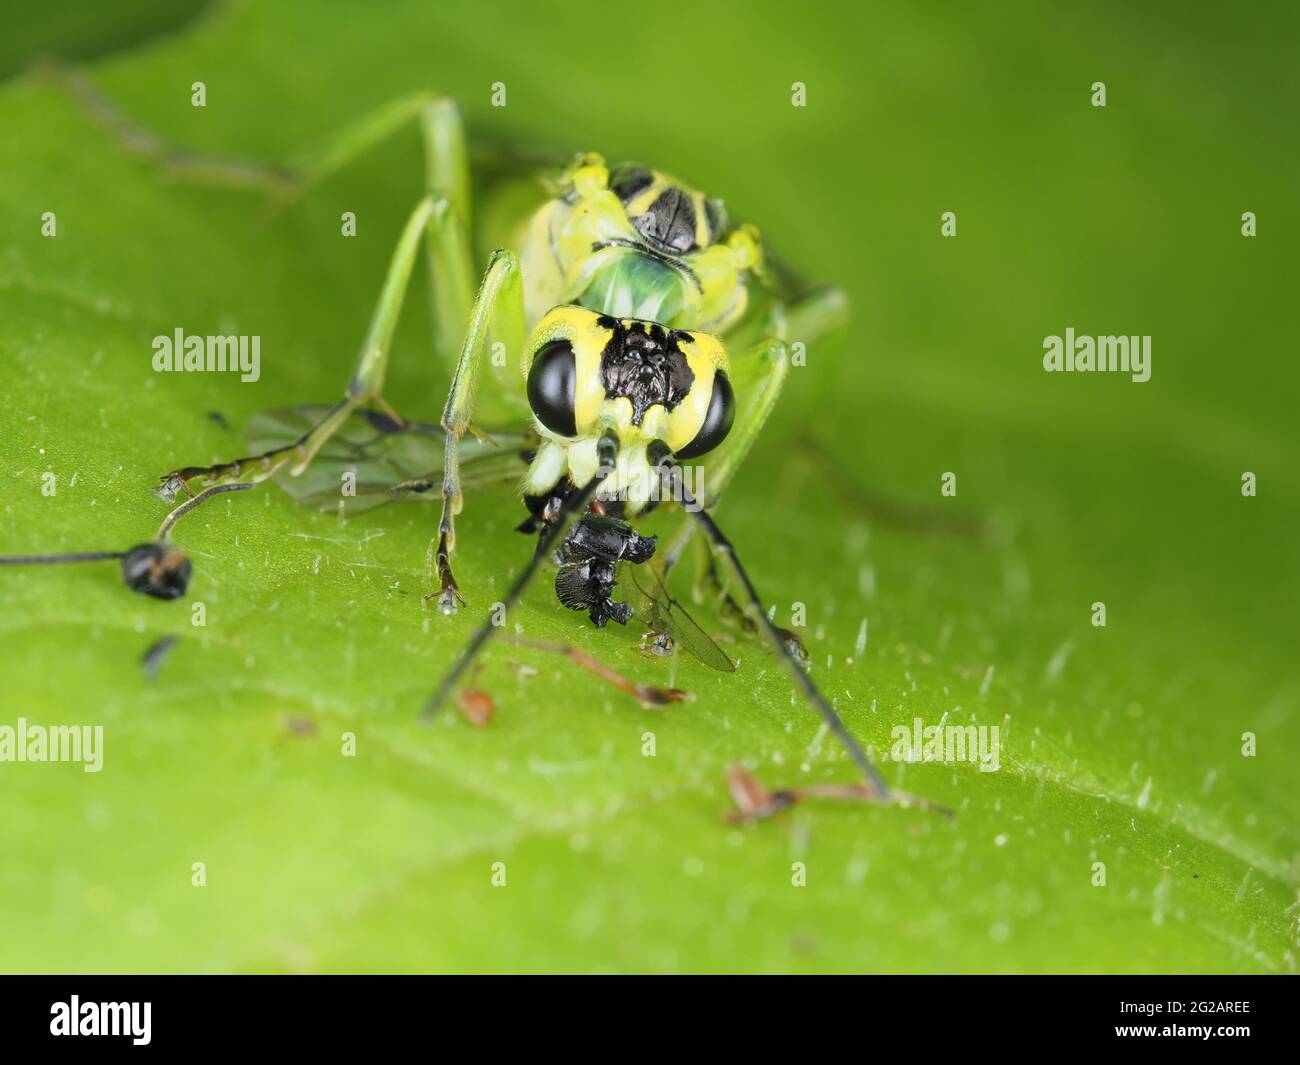 Grüne Sägeblattfliege (höchstwahrscheinlich Tenthredo rhammisia), die Beute frisst - Insektenmakro Stockfoto